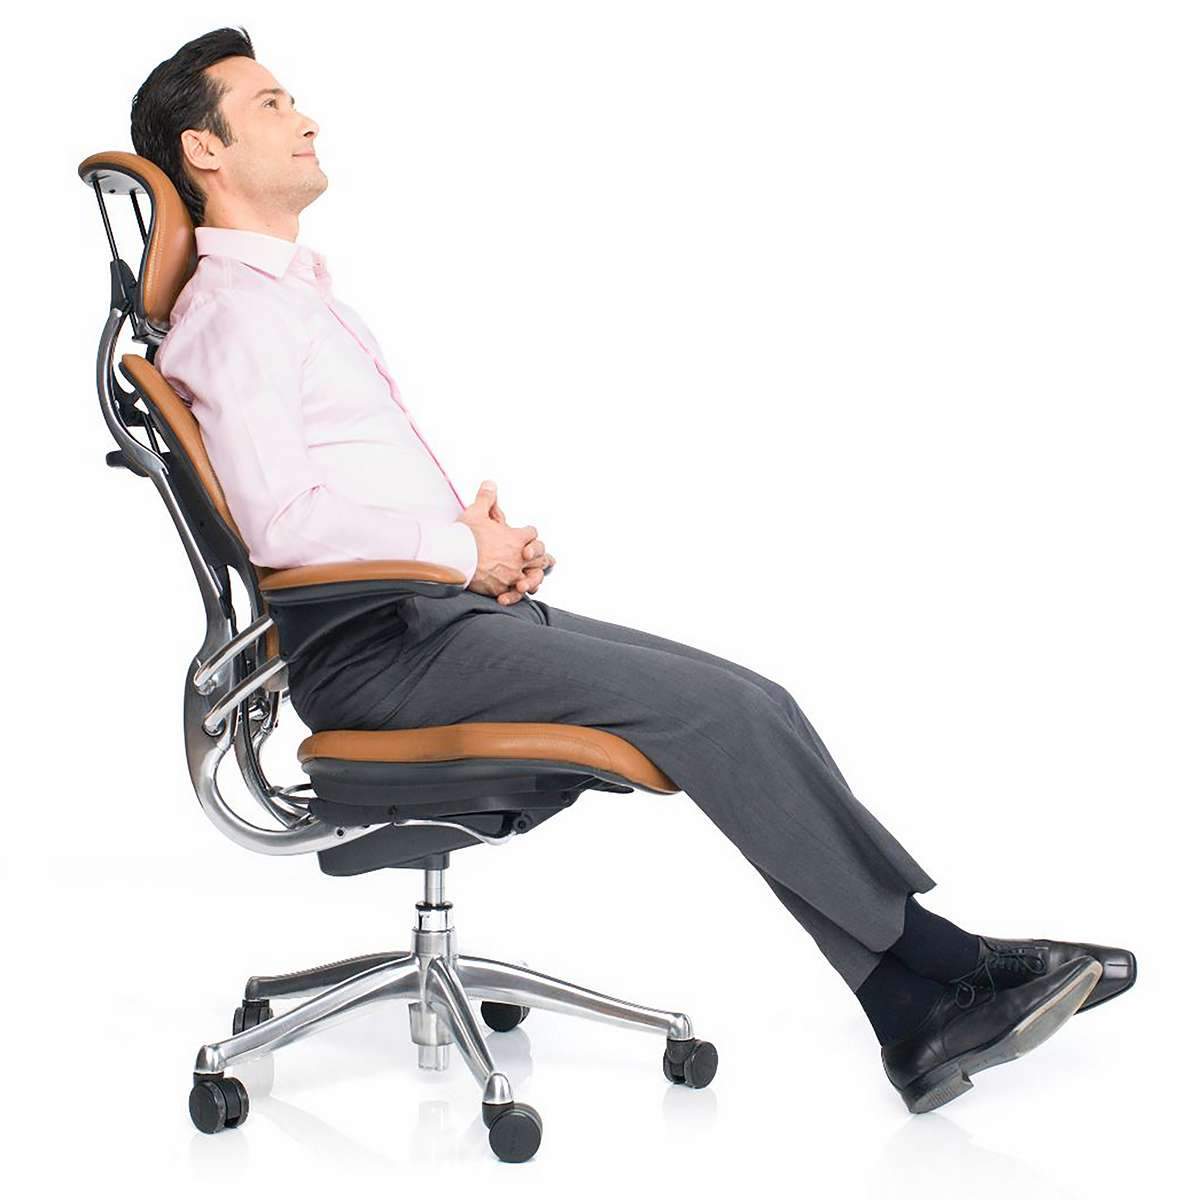 Кресло для поясницы. Кресло Ergonomic Chair. Поясничная поддержка для офисного кресла. Кресло с поддержкой поясницы. Офисный стул с поддержкой поясницы.